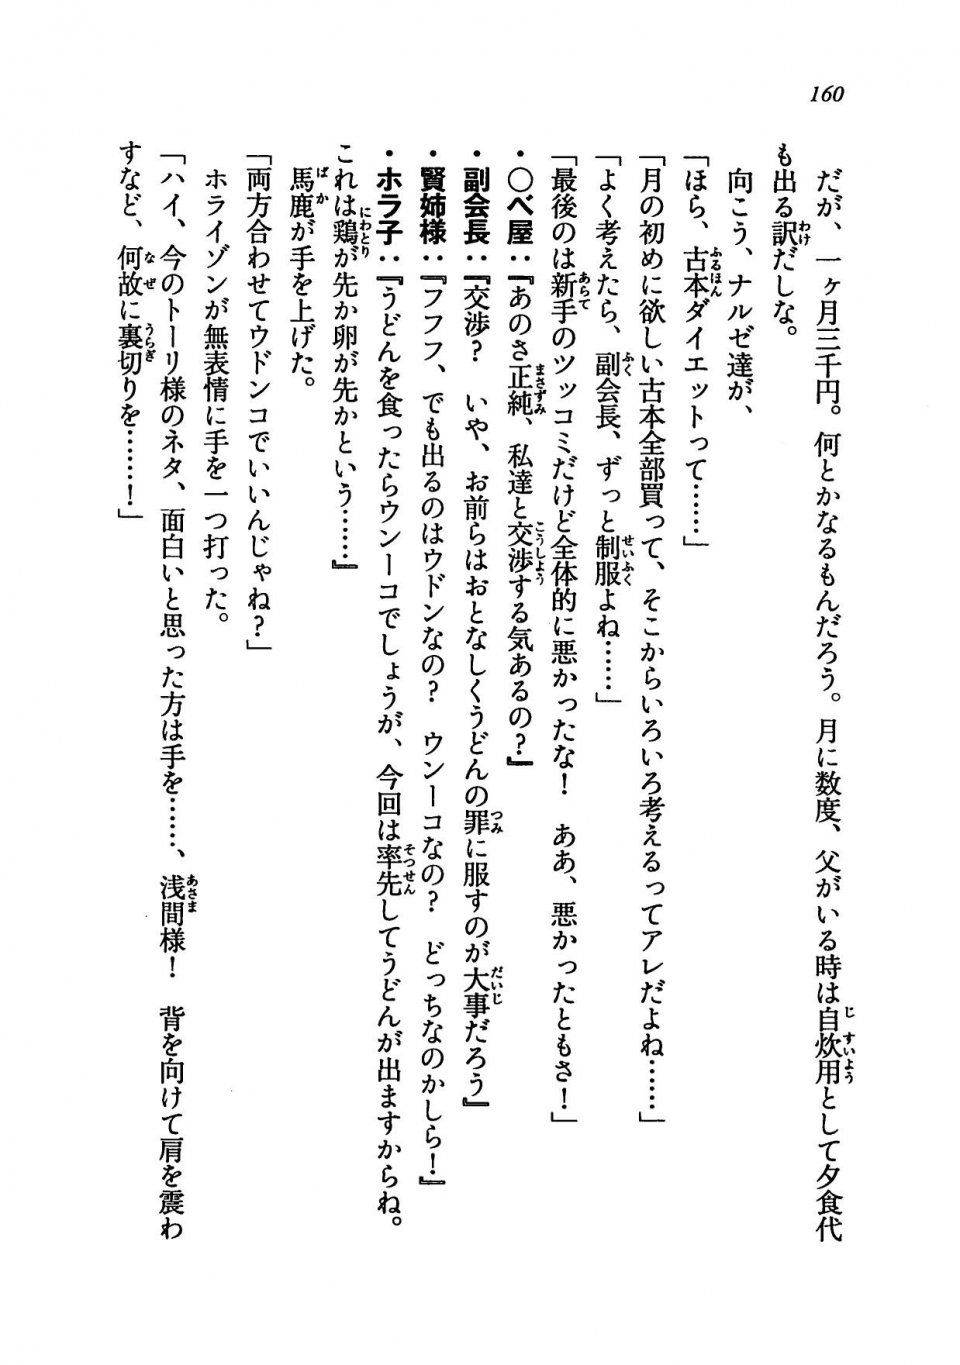 Kyoukai Senjou no Horizon LN Vol 19(8A) - Photo #160